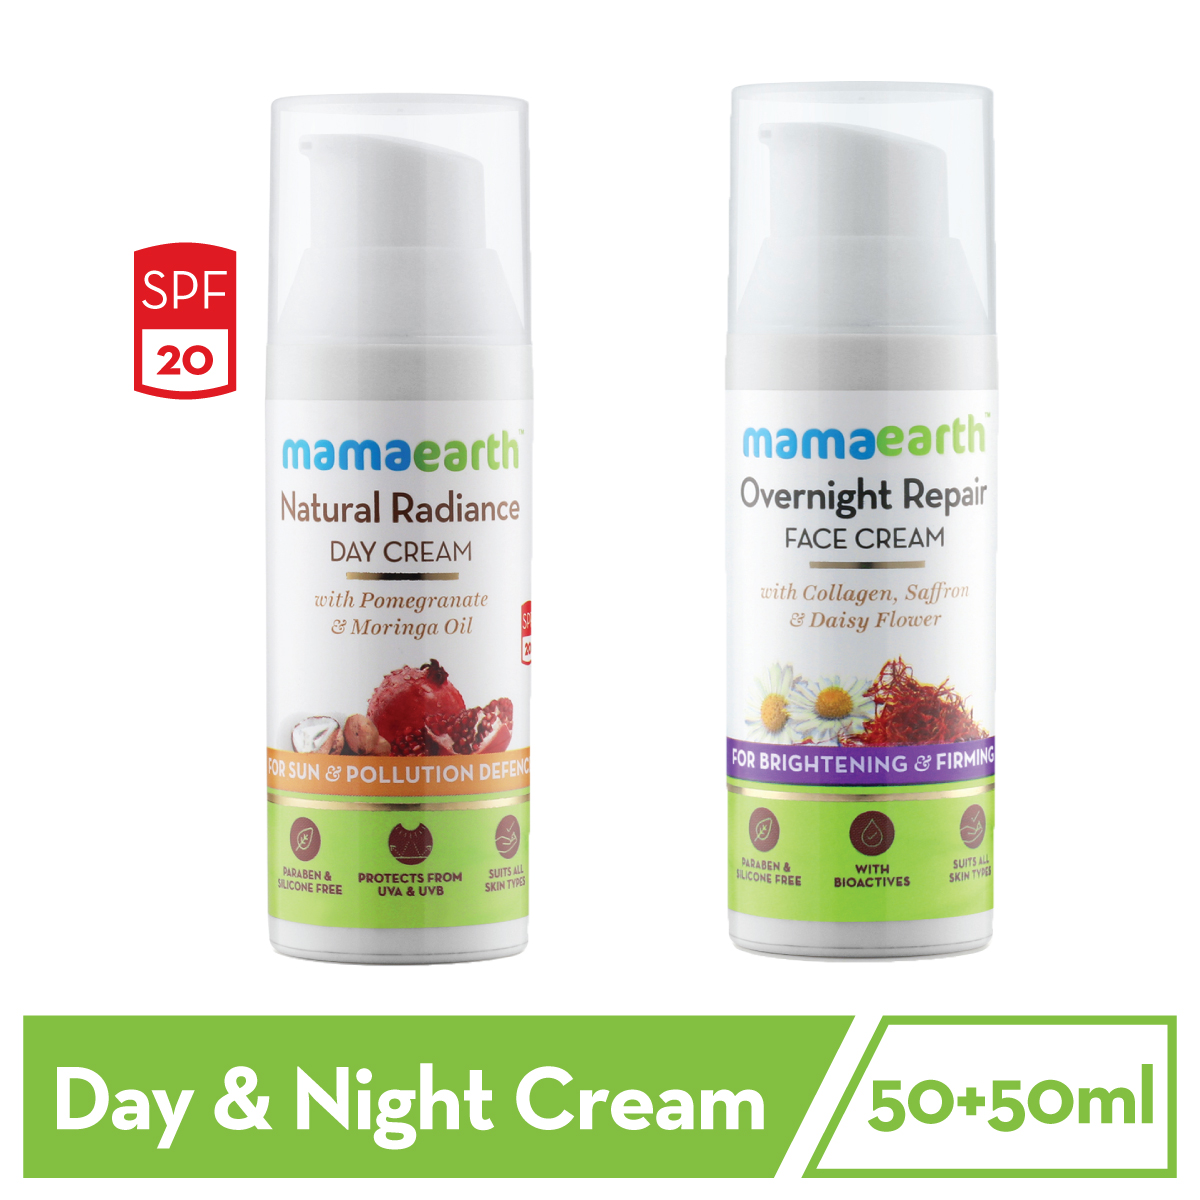 mamaearth day cream price